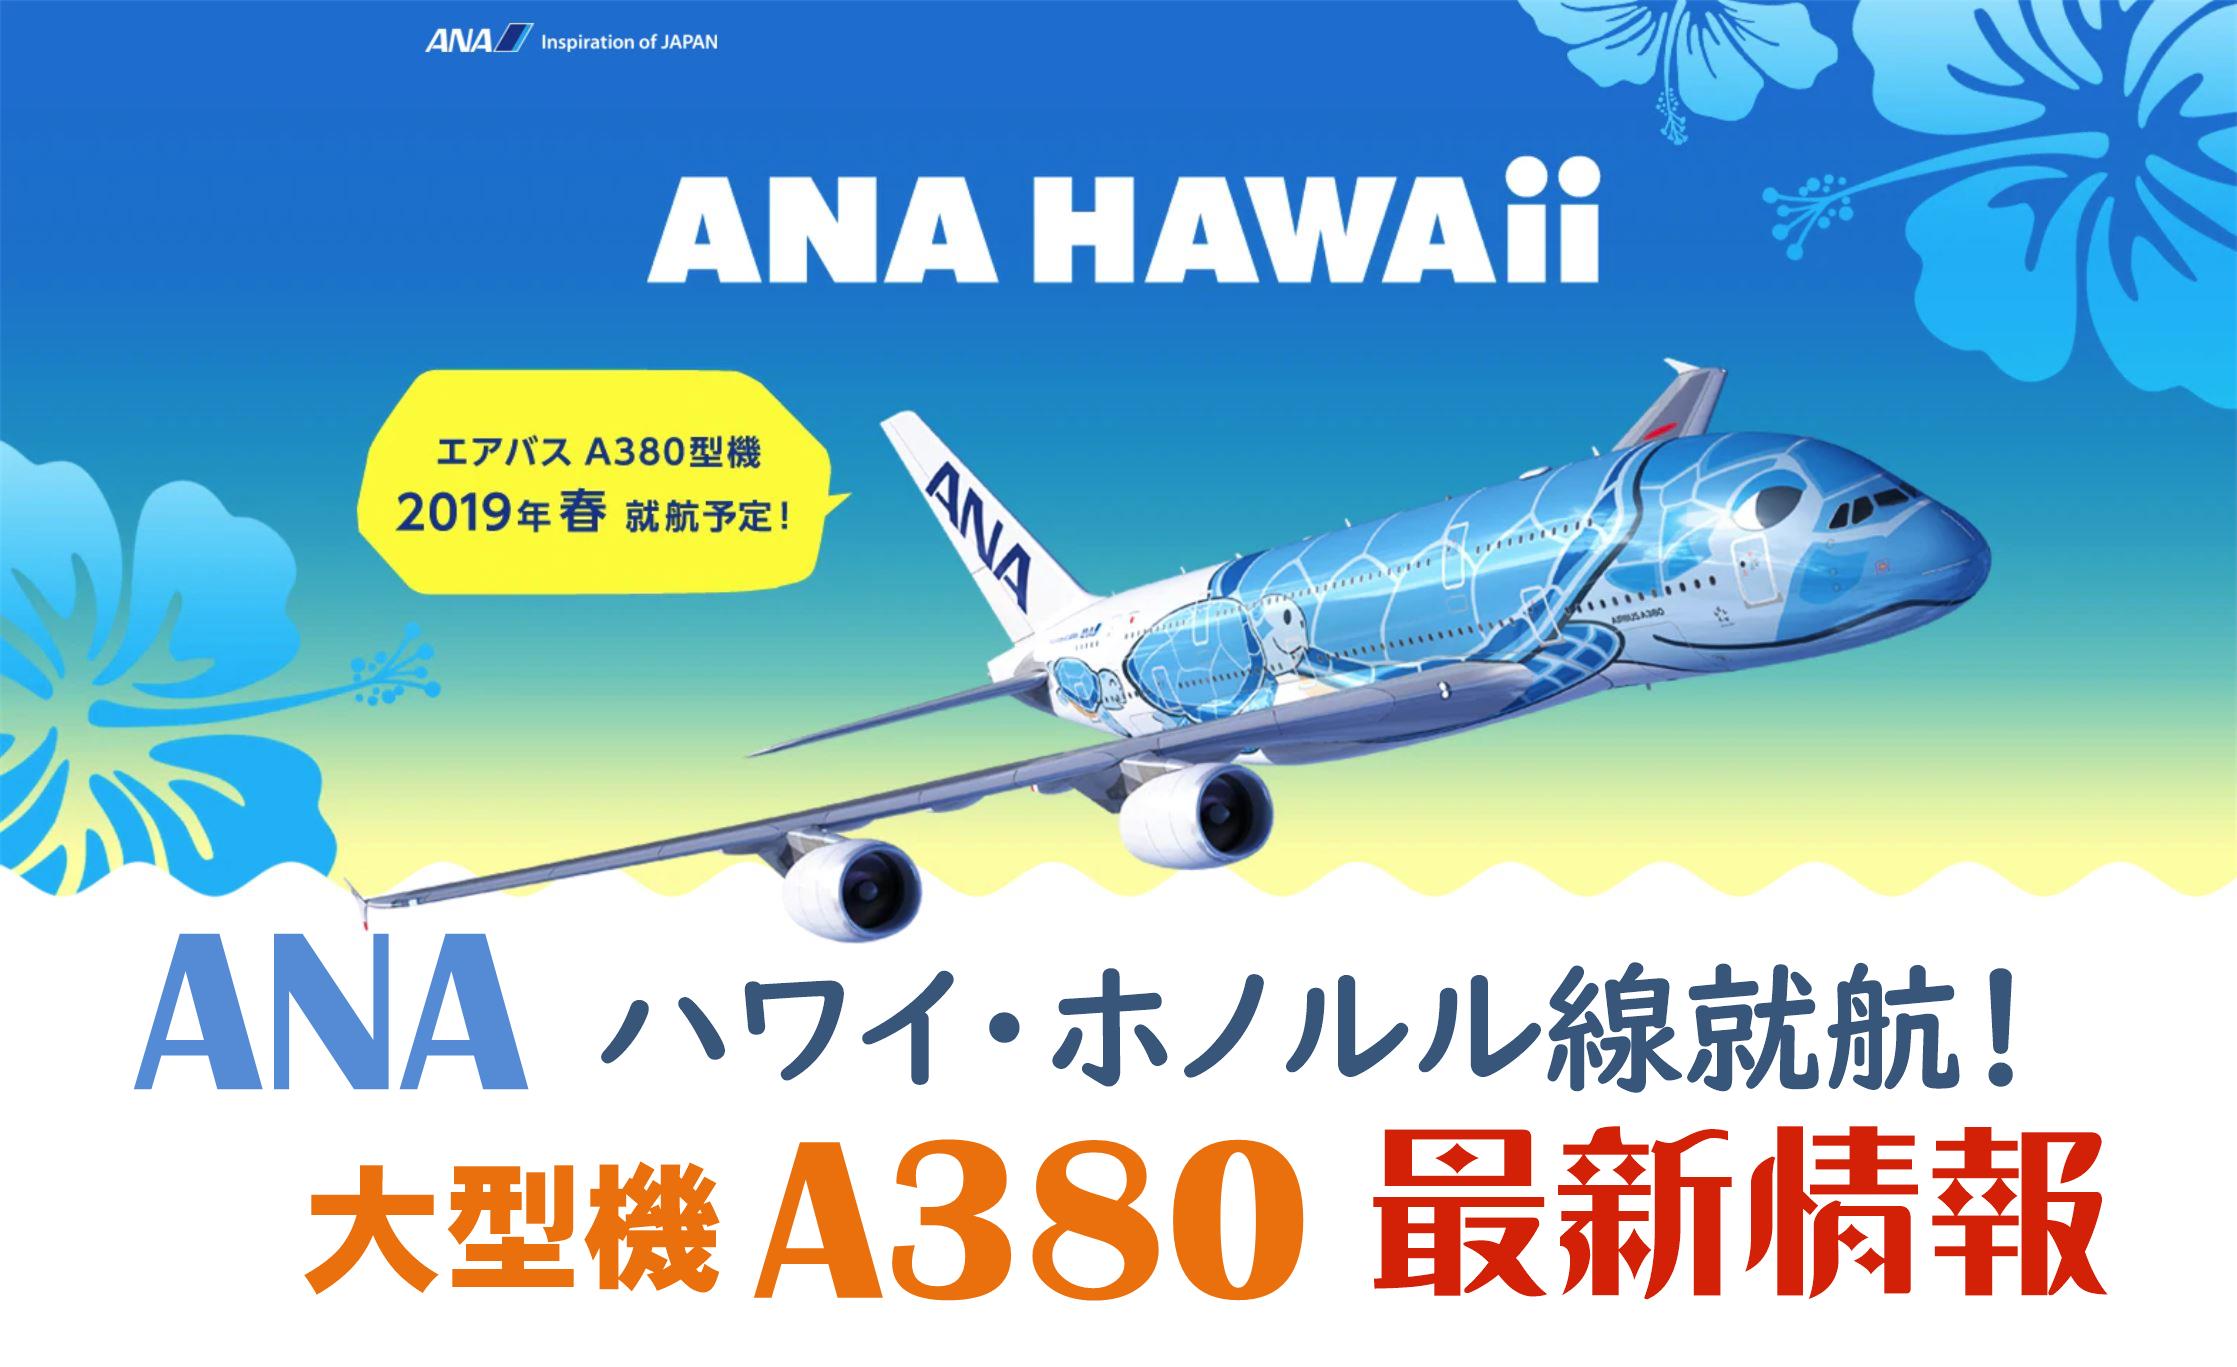 ANAハワイ・ホノルル線就航 A380最新情報